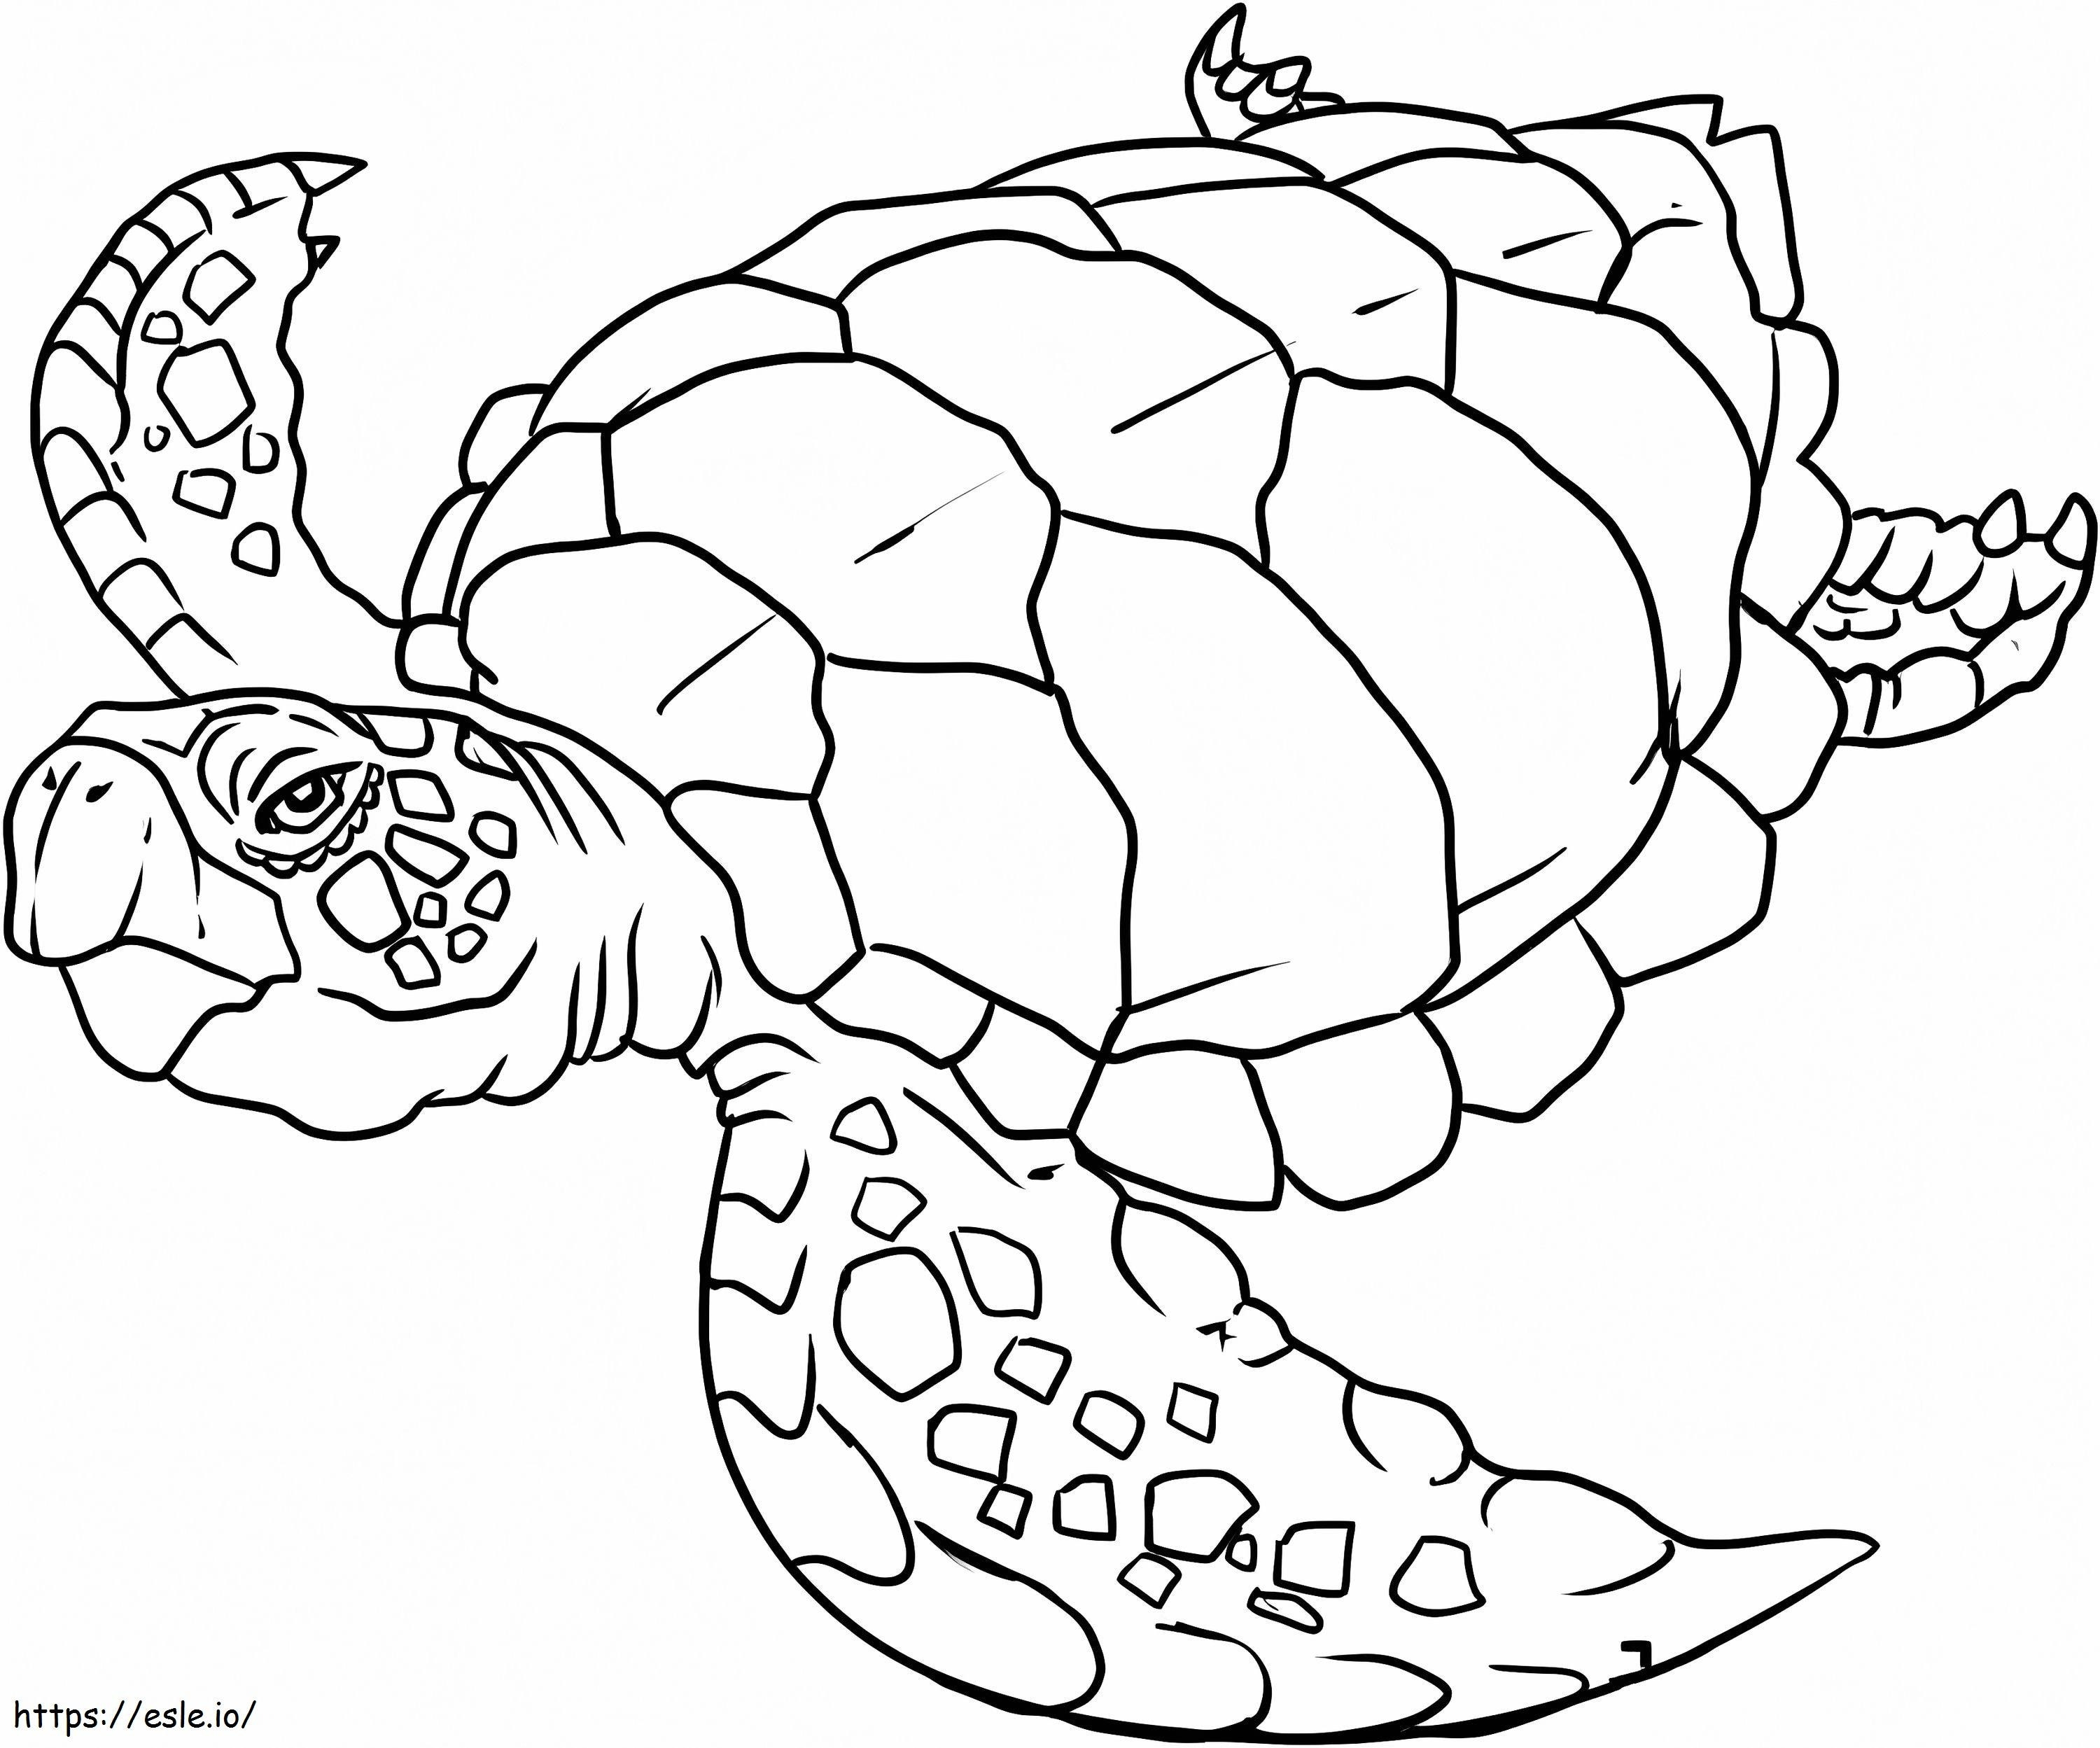 Zwemmende schildpad 1 kleurplaat kleurplaat